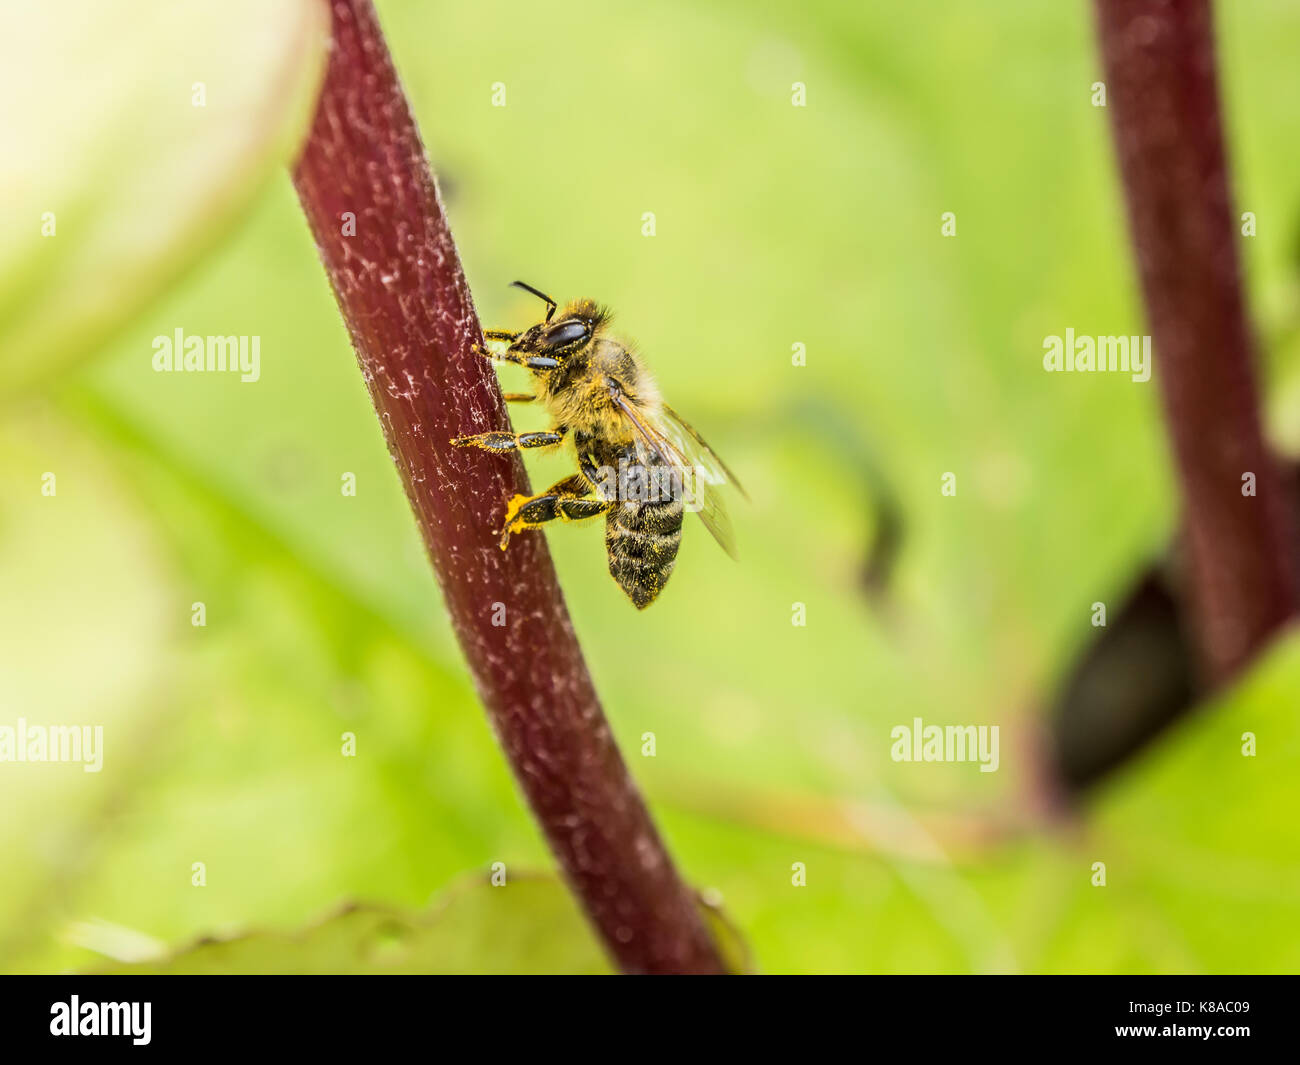 Die bestäubung. Honig Biene sitzt auf einer roten Blume sprig. Makro anzeigen. close-up Fotografie. grünen Hintergrund. Stockfoto